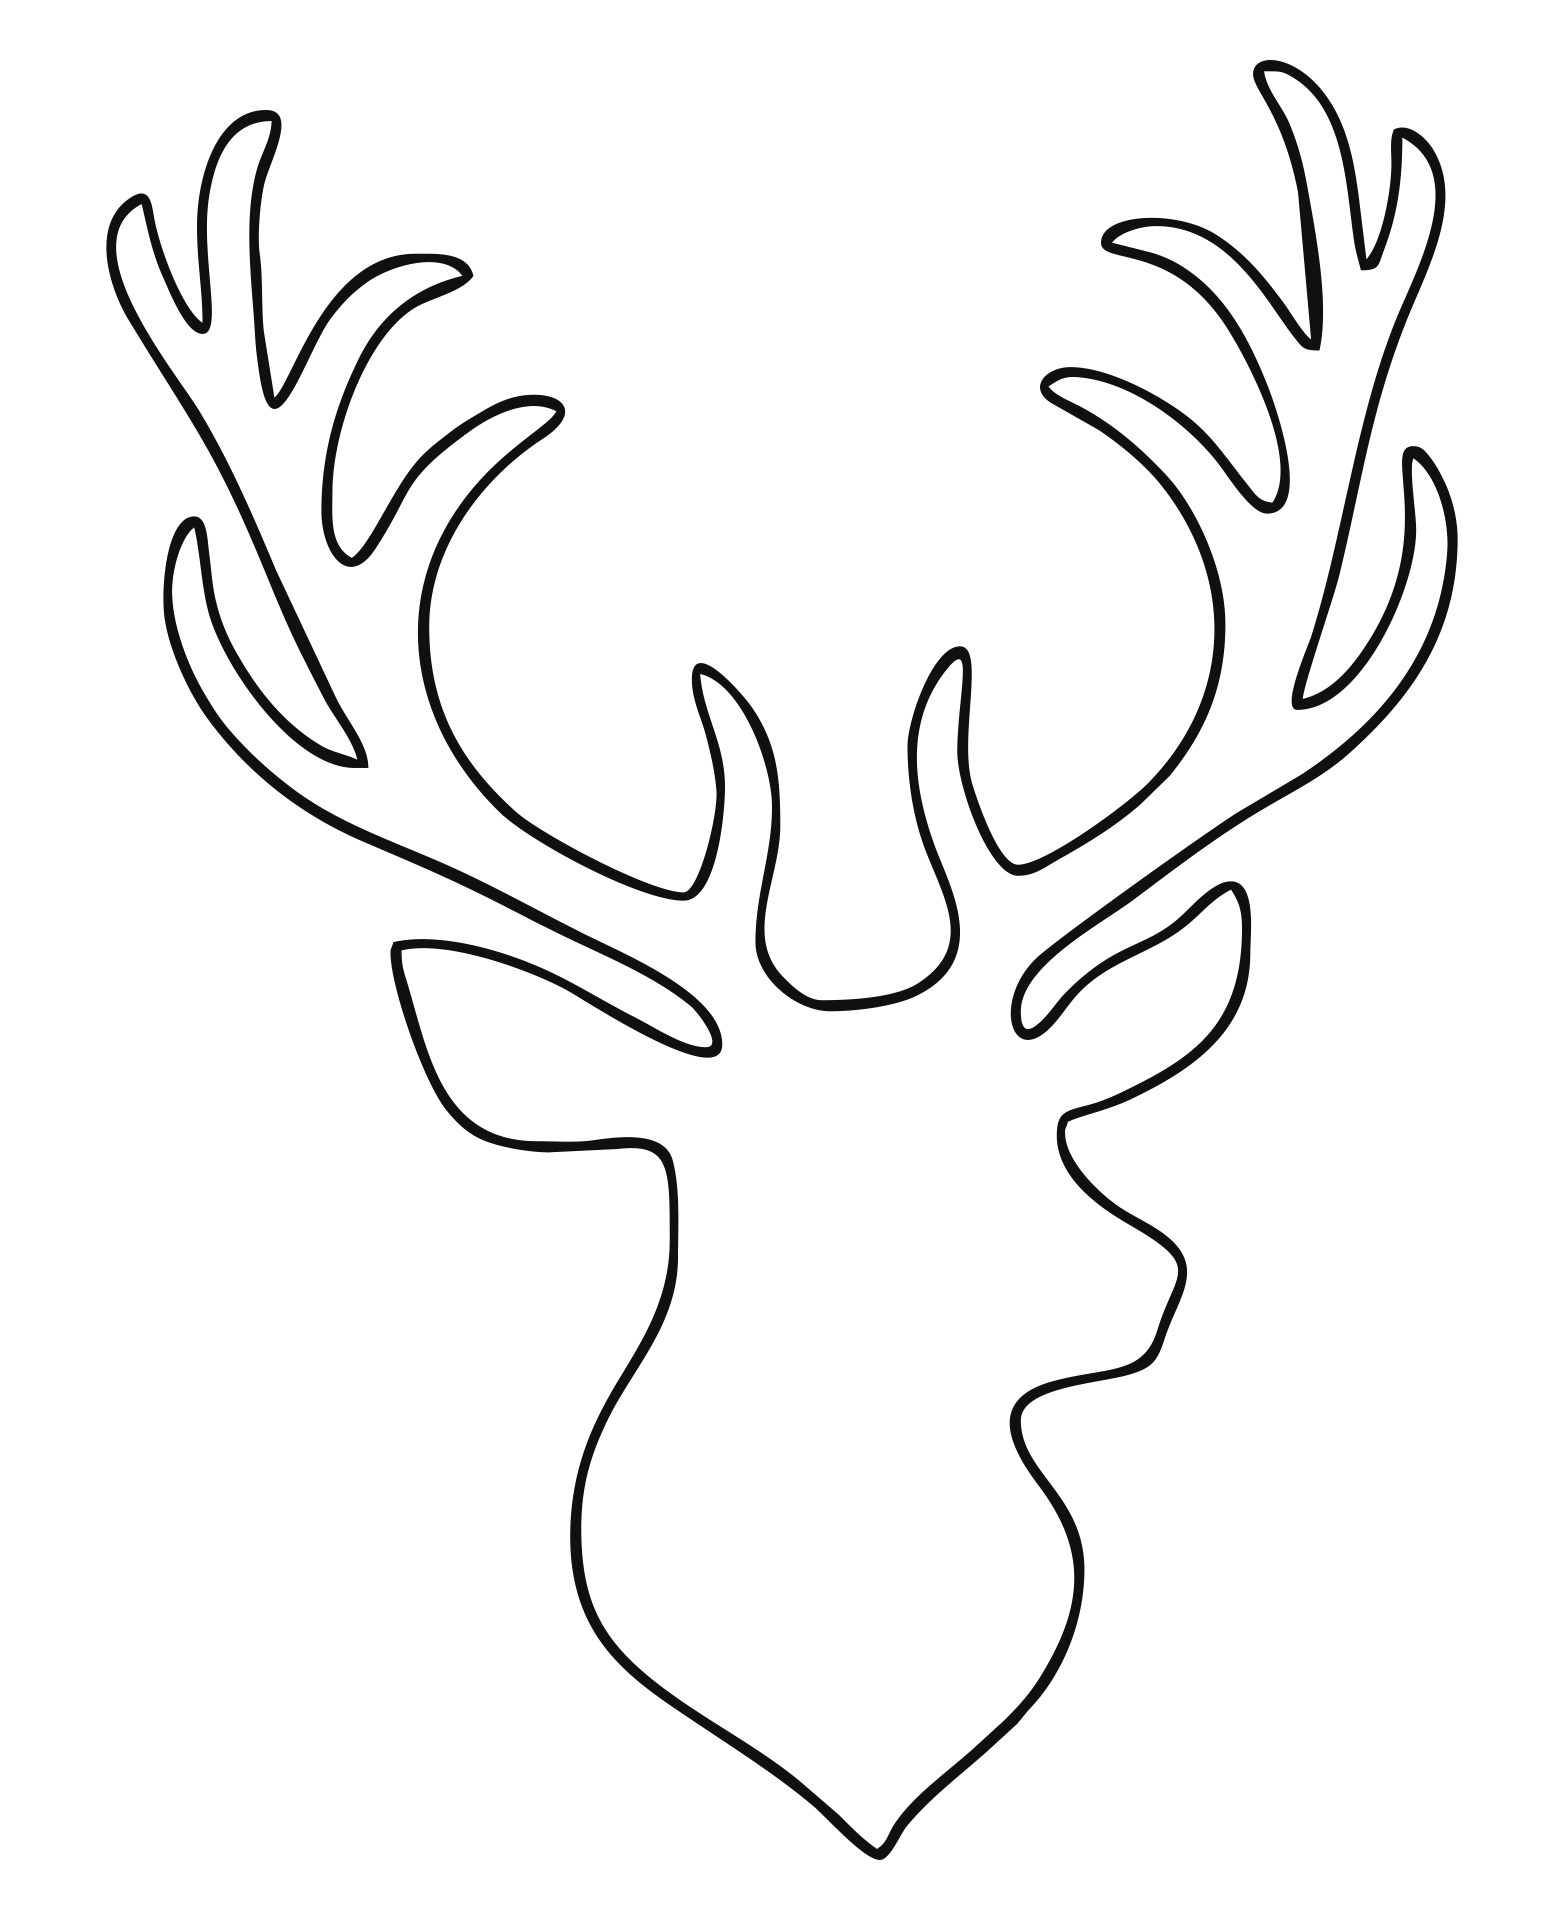 9-best-images-of-printable-reindeer-patterns-free-printable-reindeer-crafts-printable